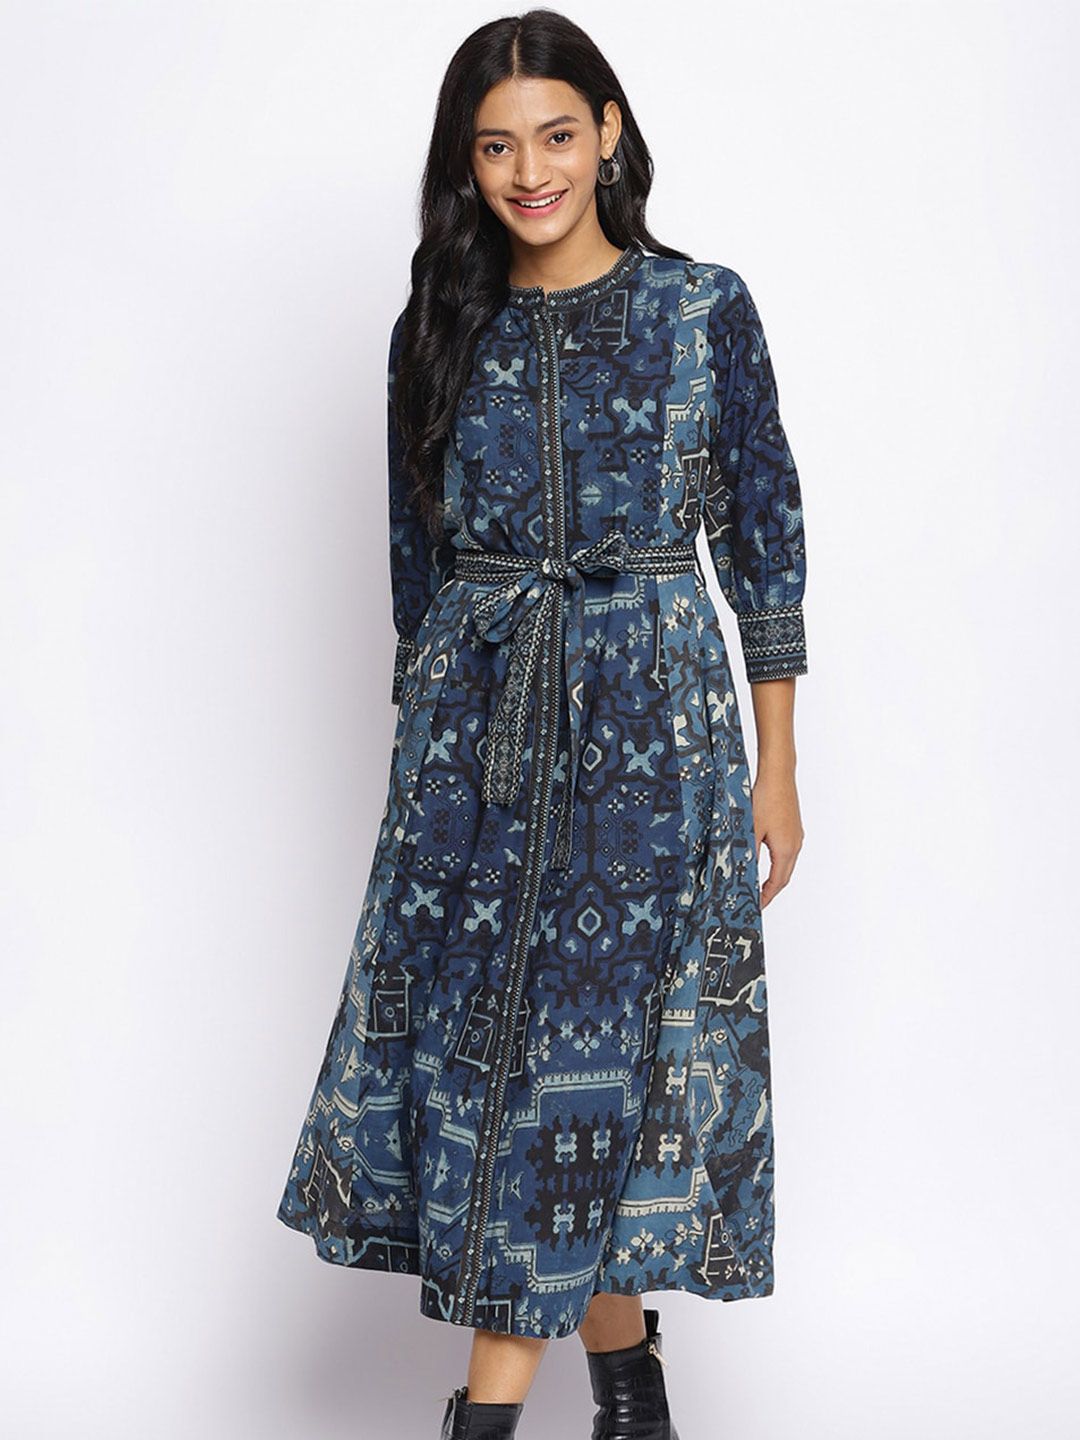 Fabindia A-Line Midi Cotton Dress Price in India